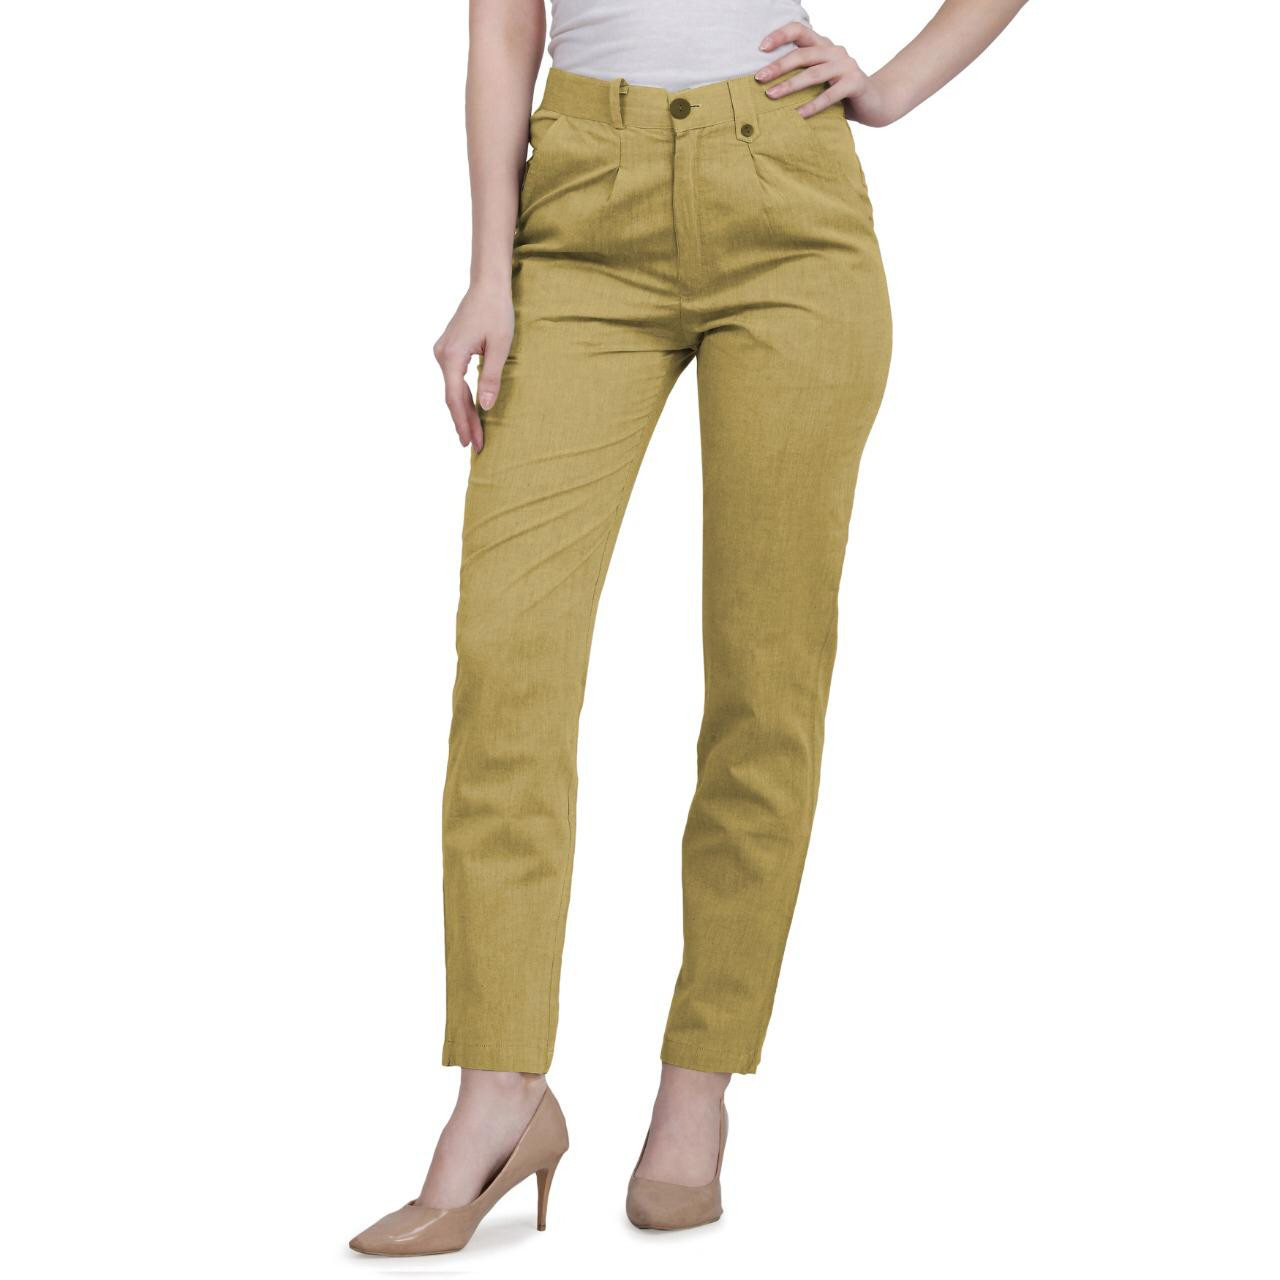 Latest Trousers Designs||New capri Designs||Easy & Unique Trousers Designs  | Trouser designs, Women trousers design, Capri design